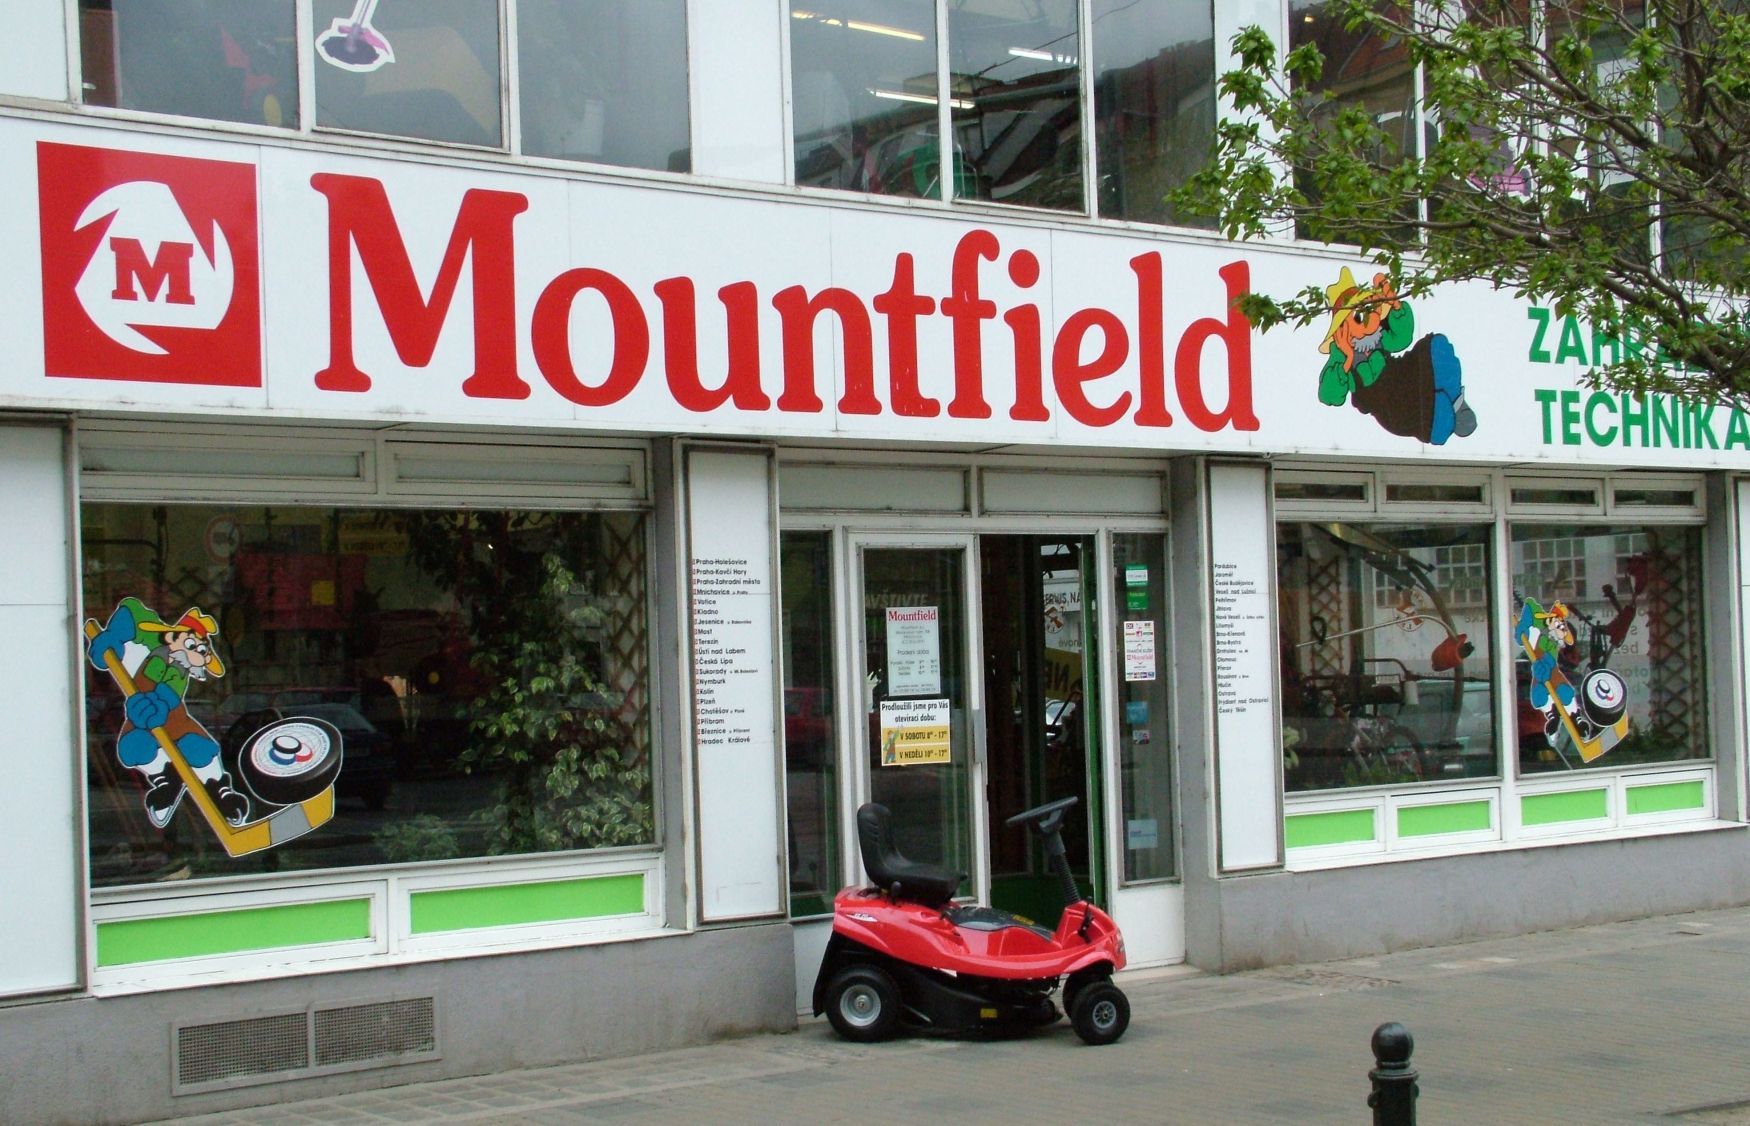 Mountfield prodejna